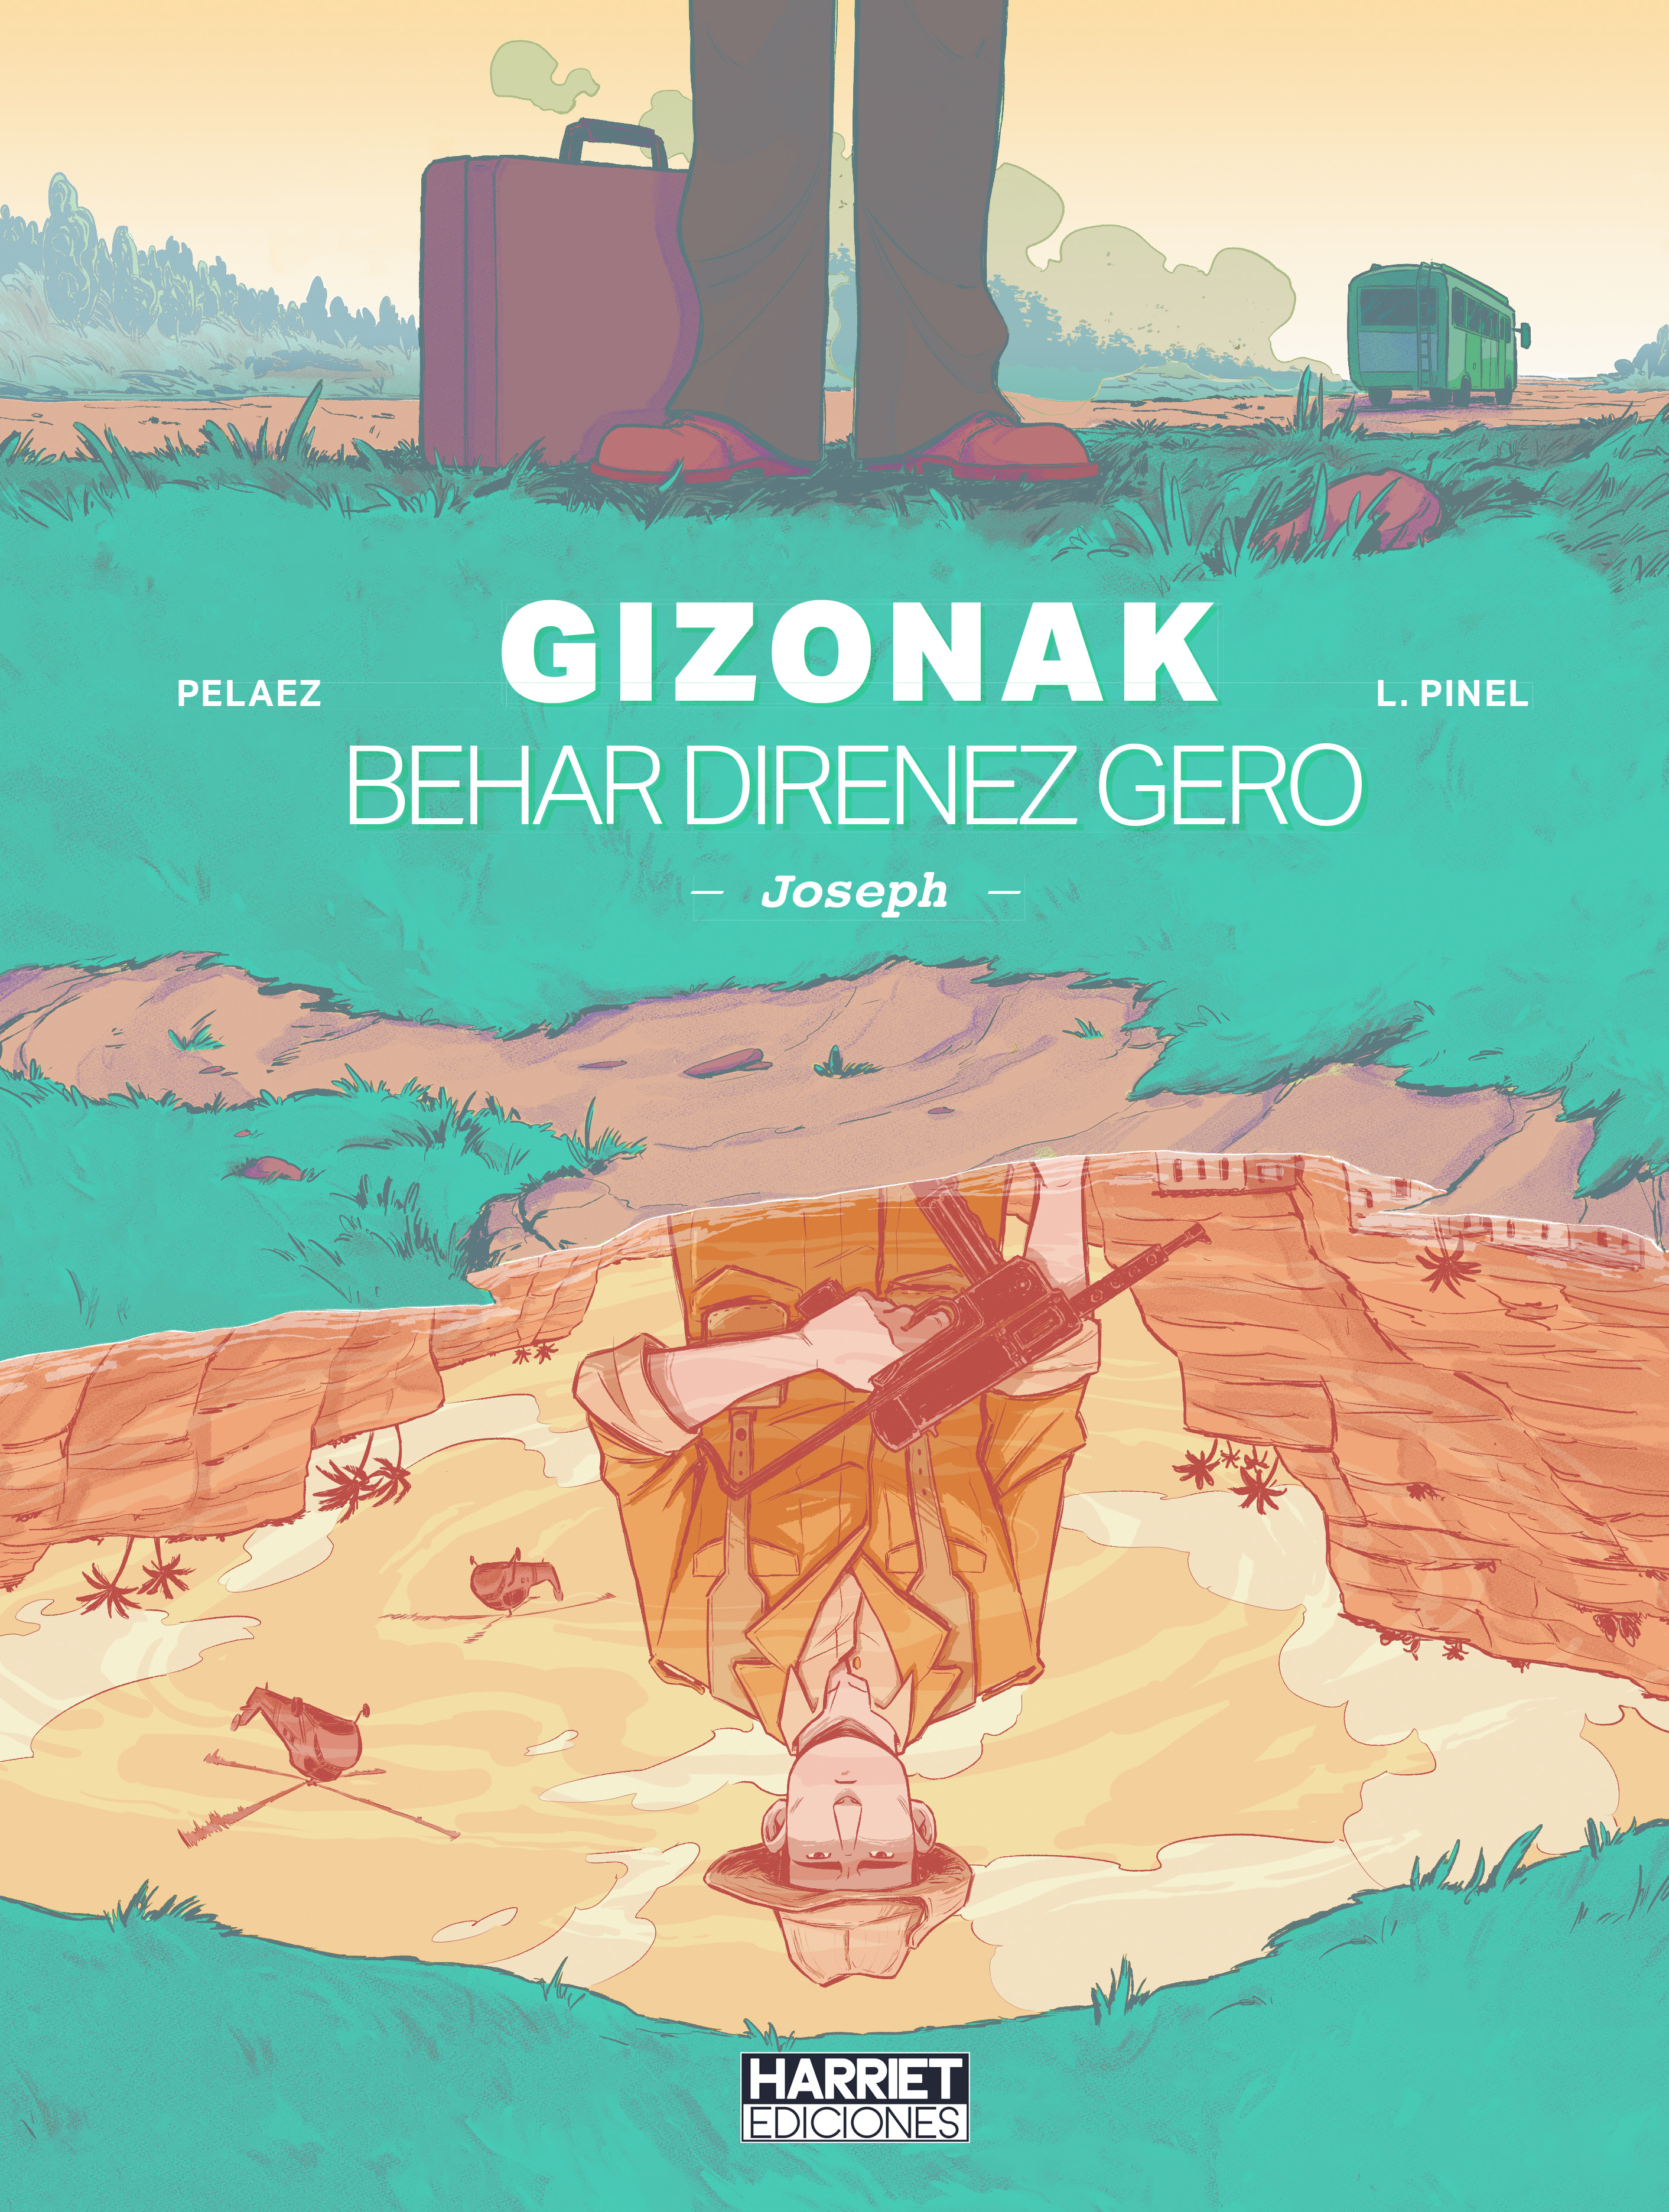 "Gizonak behar direnez gero - Joseph", Aljeriako Independentzia Gerrako kontuak